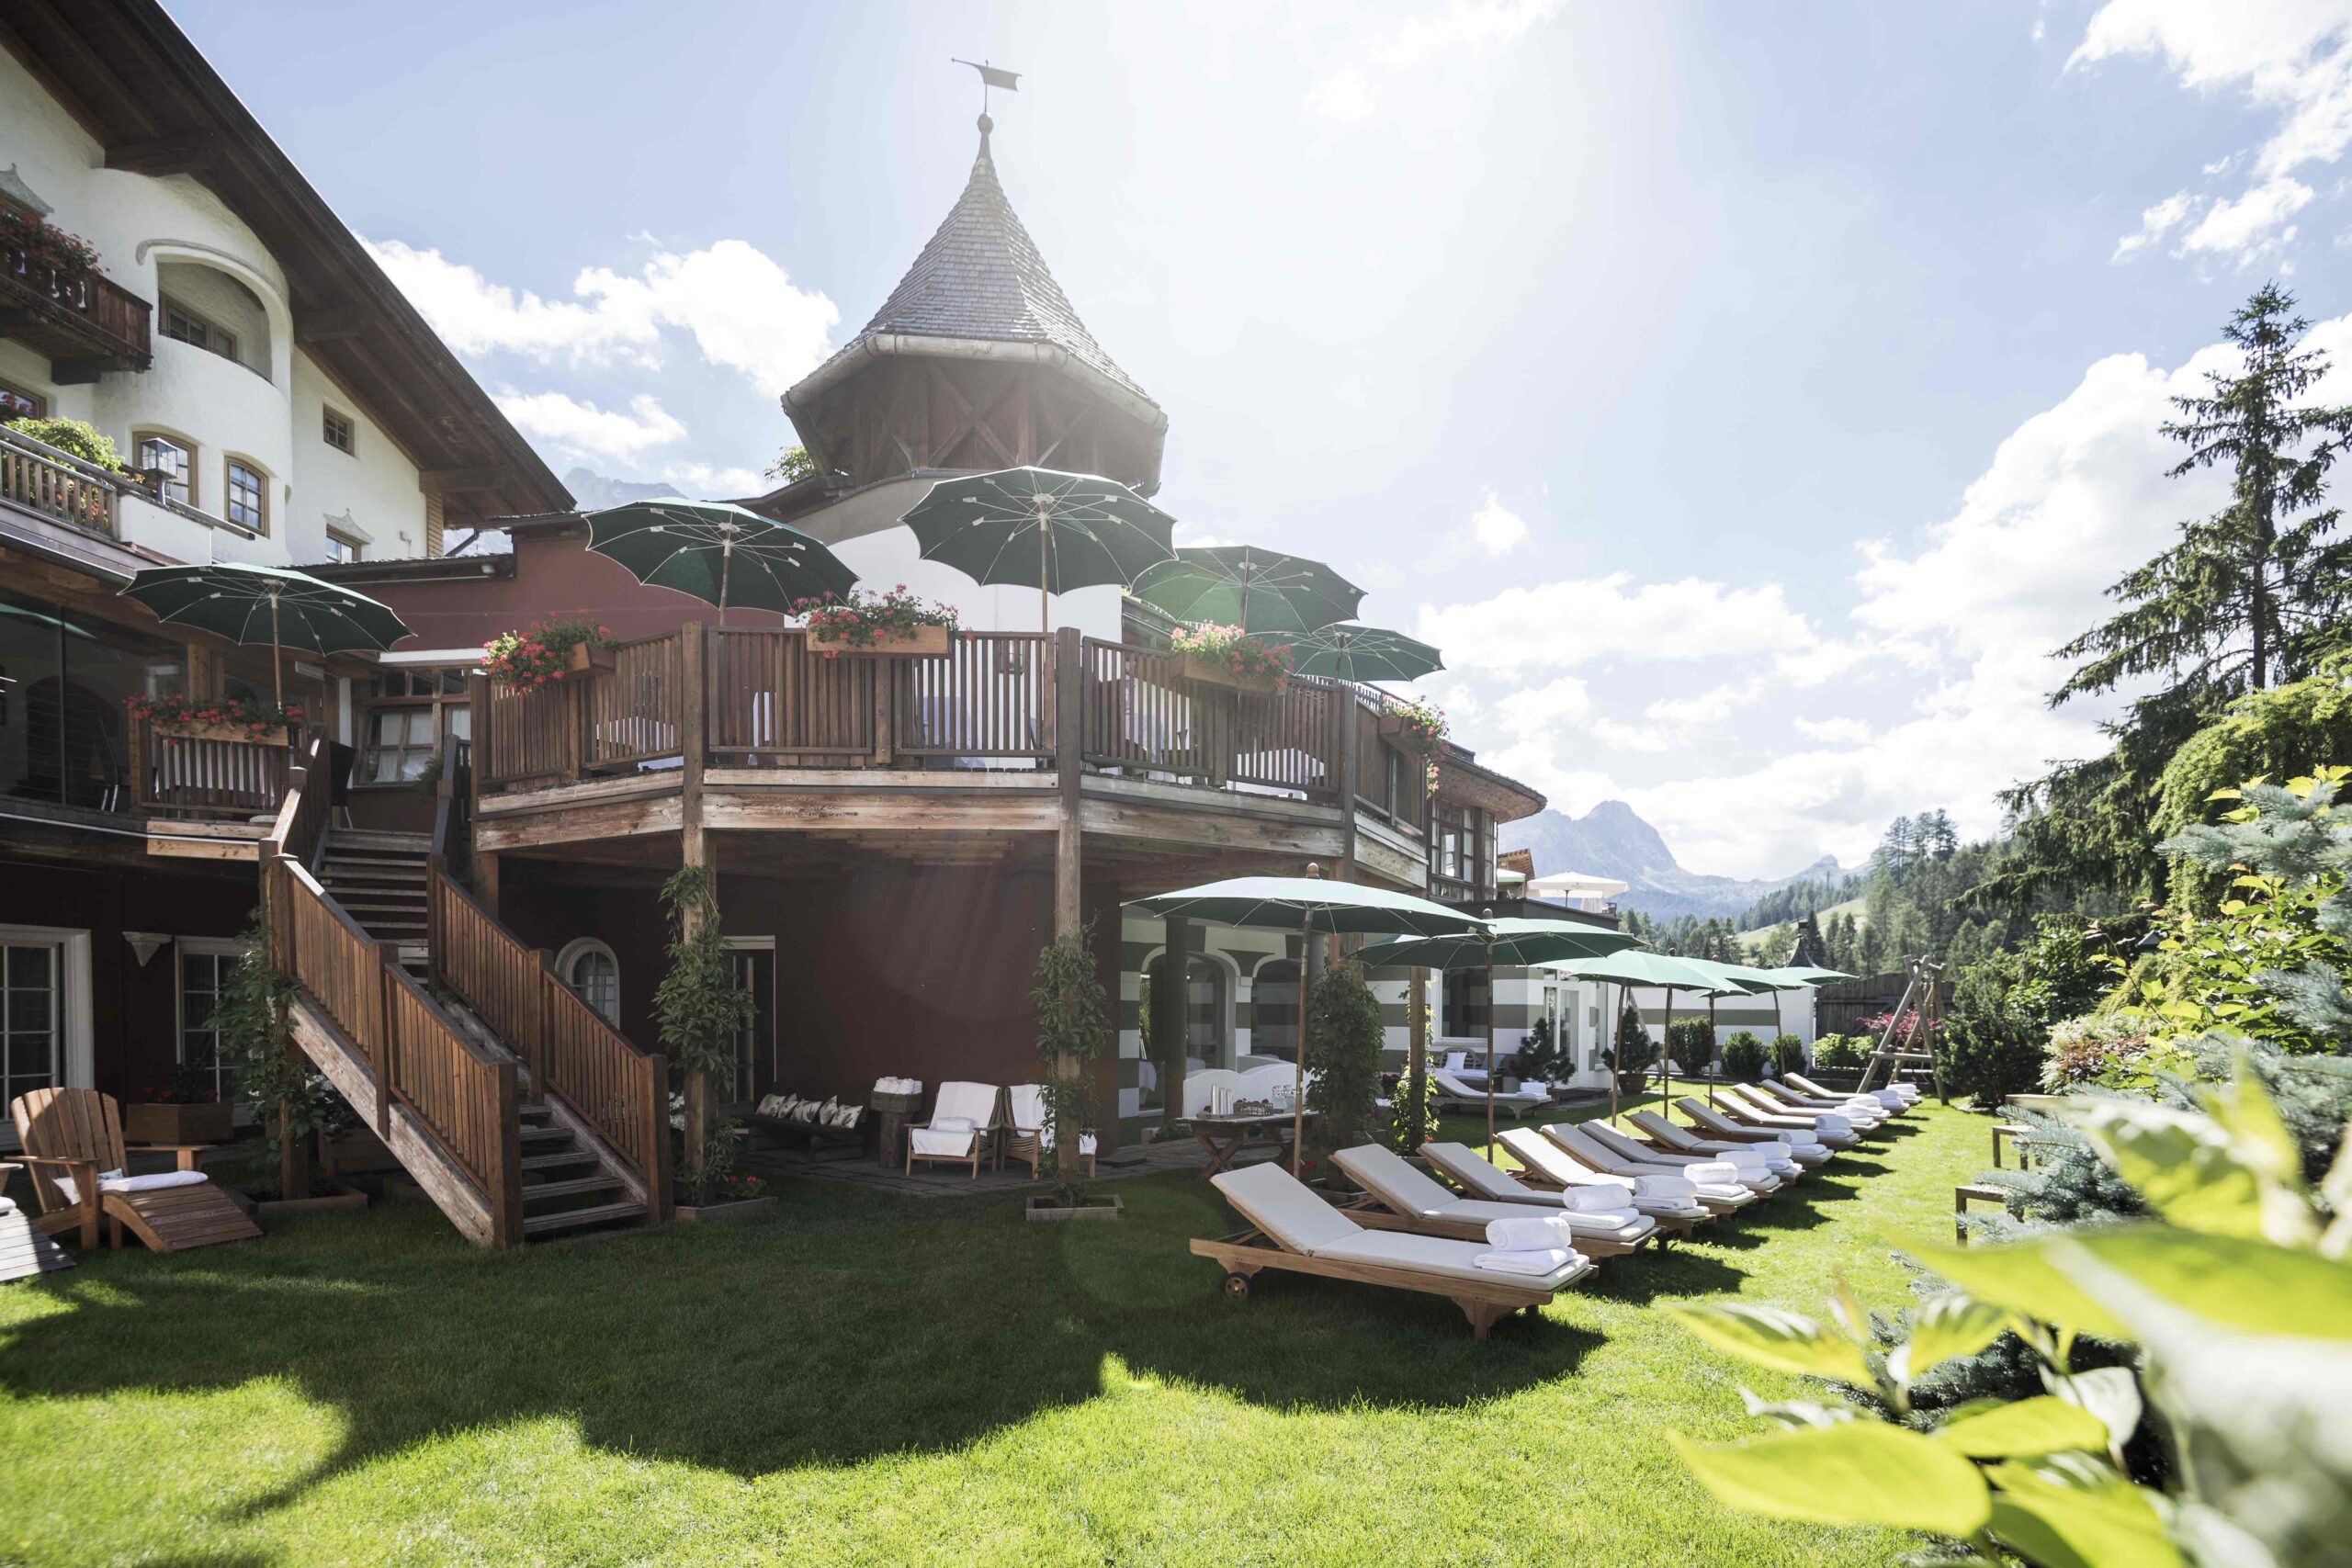 Rosa Alpina, An Aman Partner Hotel, Dolomites – Italy